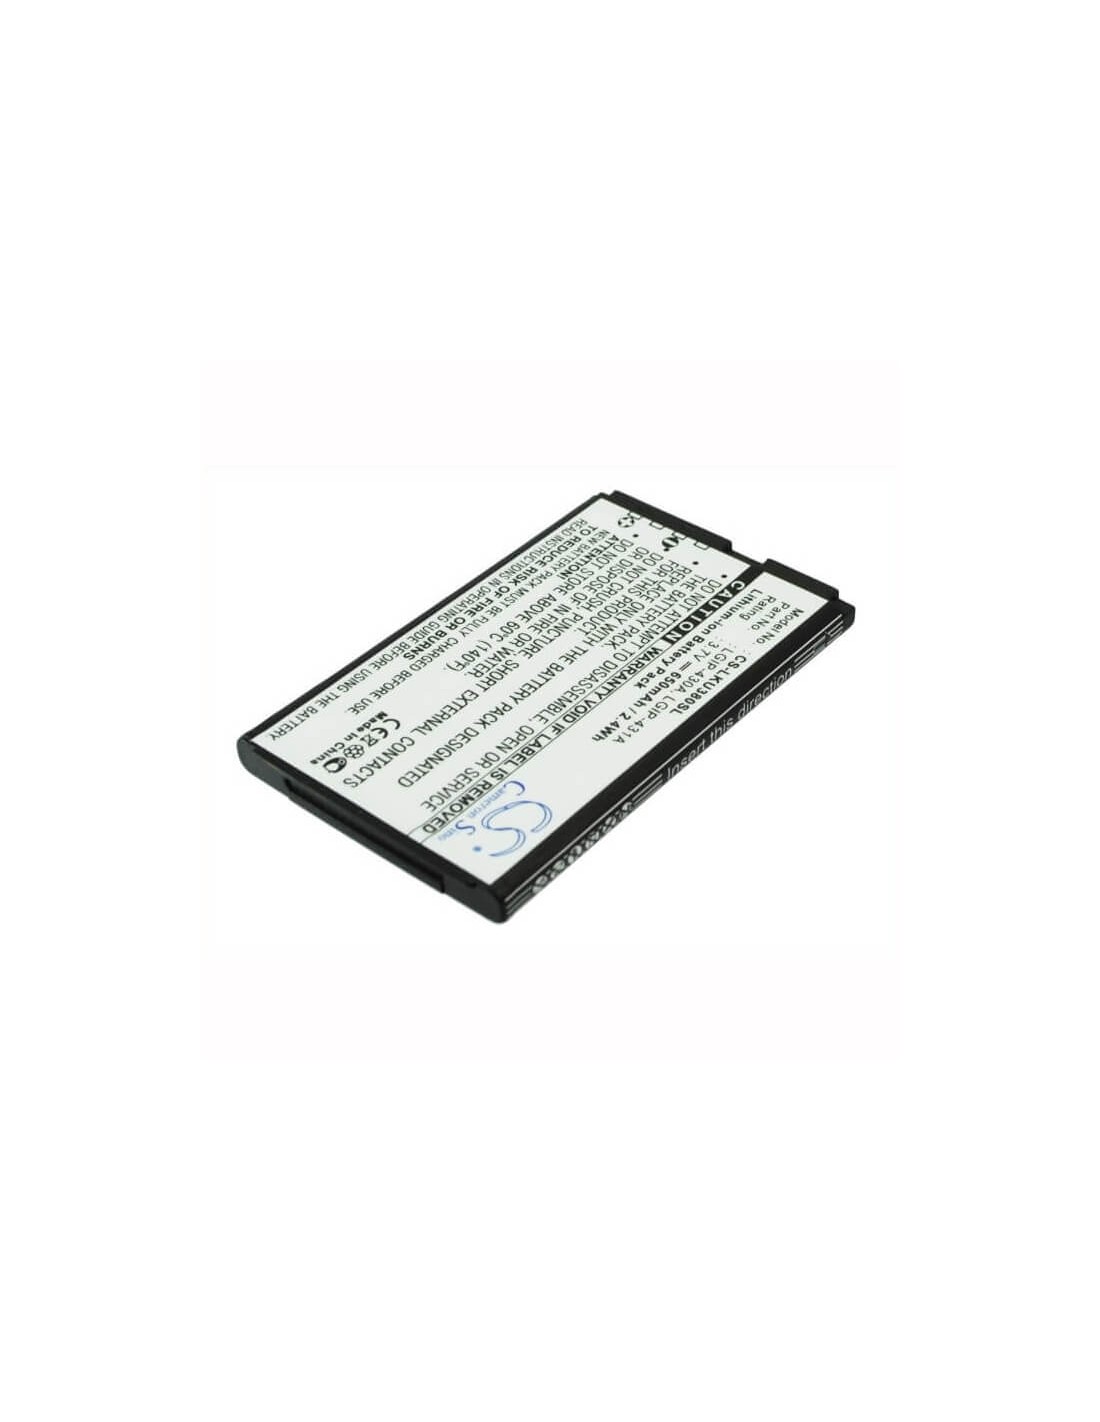 Battery for LG KU380, KP100, CE110 3.7V, 650mAh - 2.41Wh